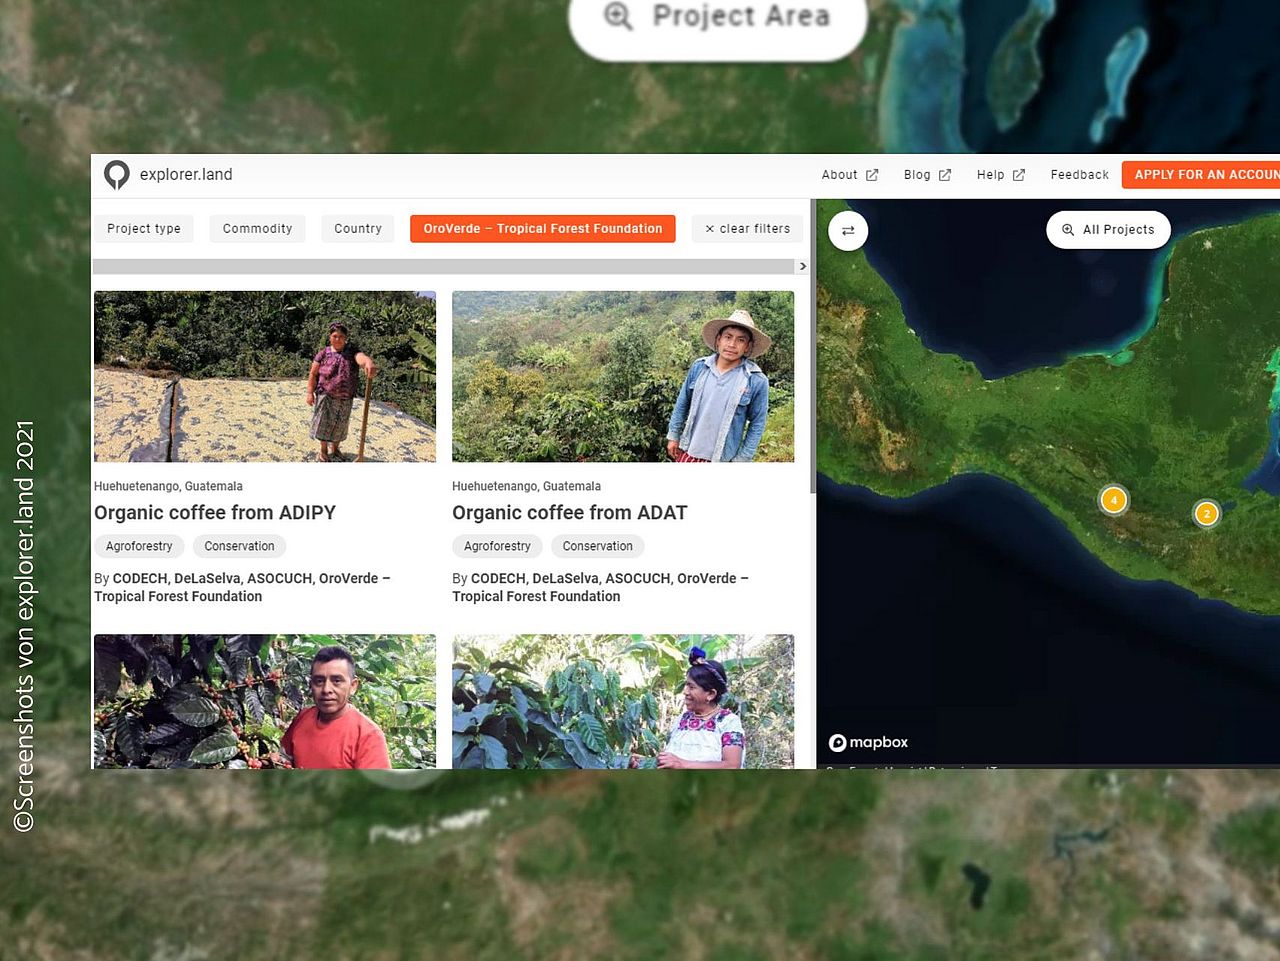 Geoportal erfasst Projektmitwirkender in Guatemala und dokumentiert die Kaffee- und Kakao-Ernten im Agroforstsystem. ©explorer.land